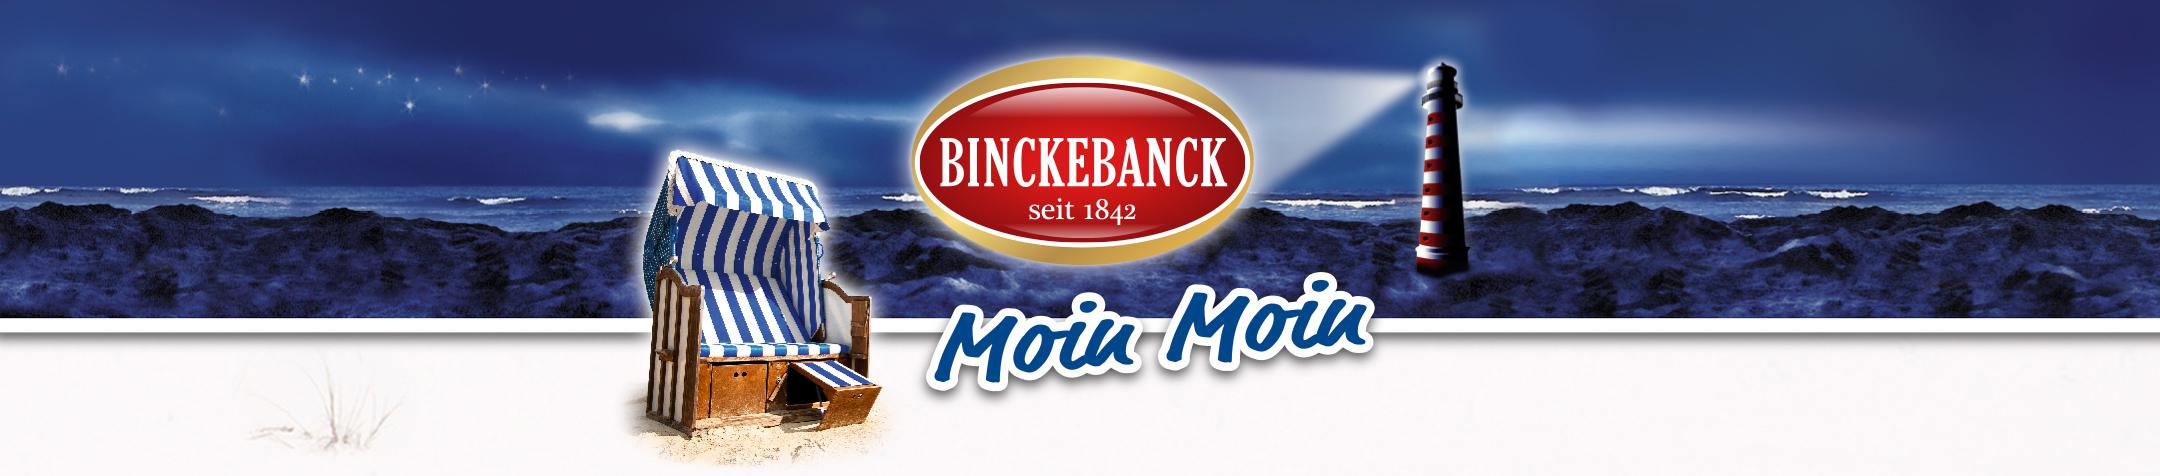 Logo: Binckebanck, Moin Moin